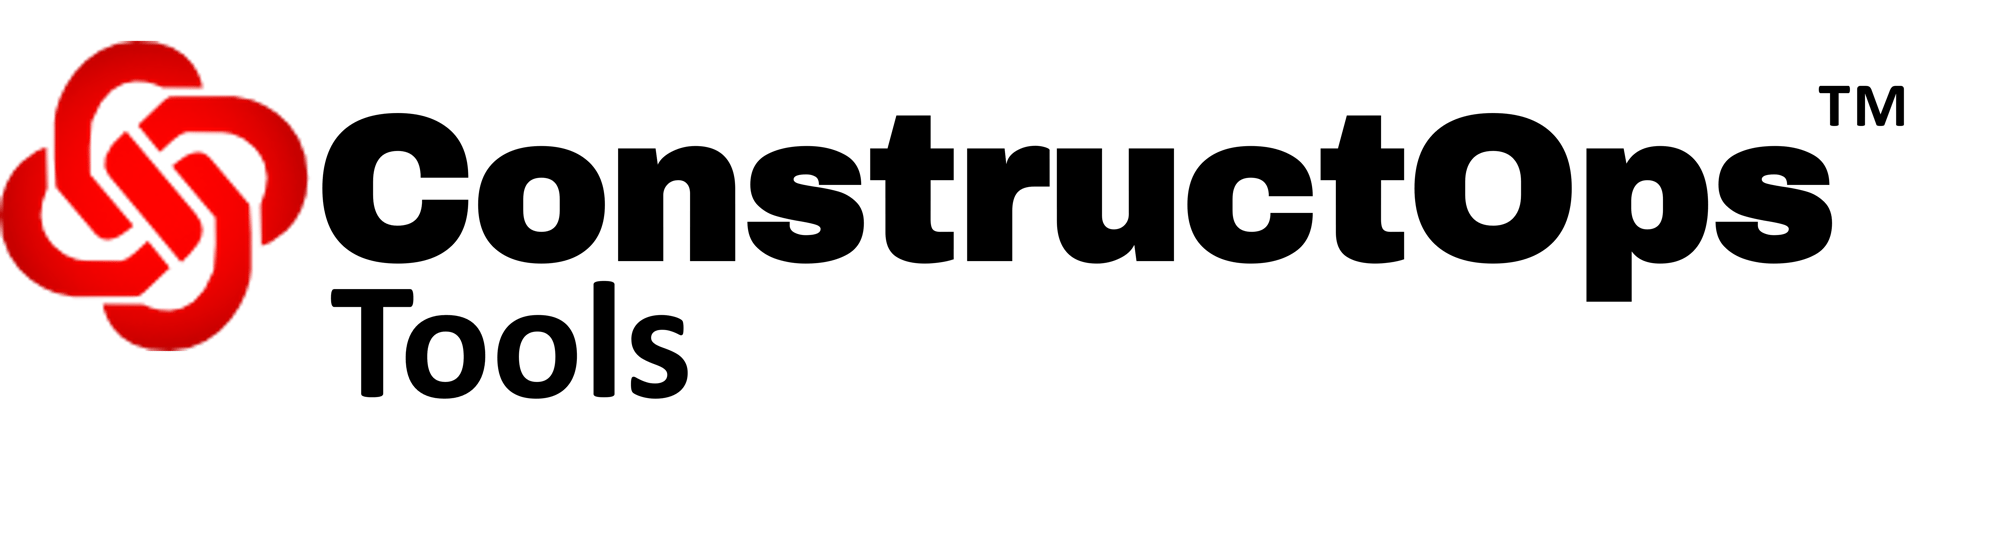 constructops-tools-logo-black